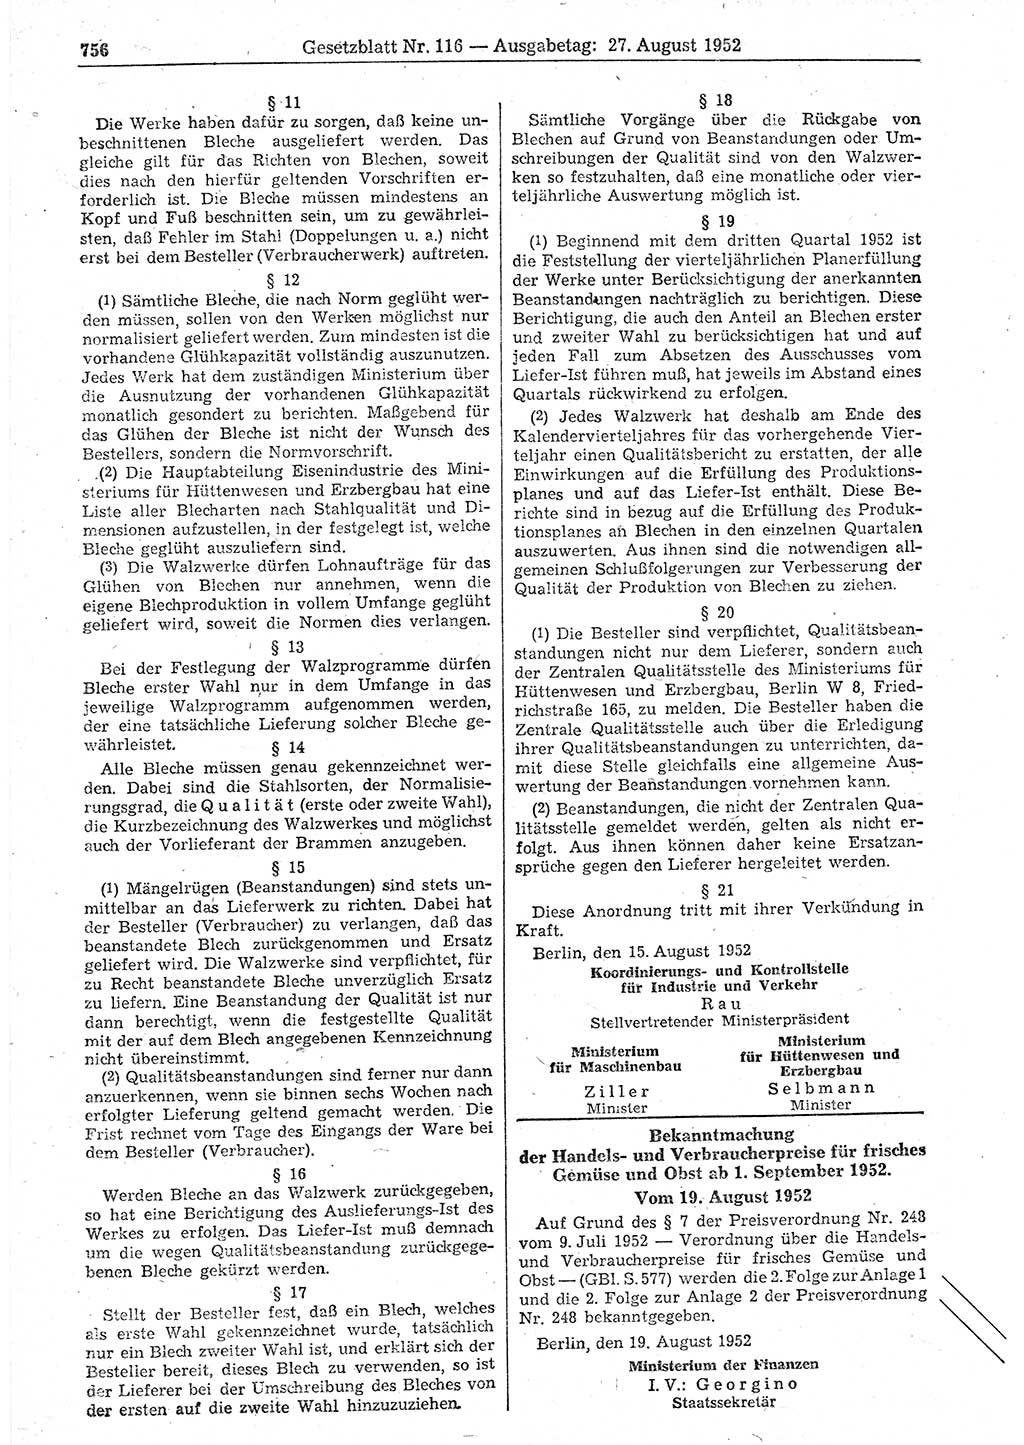 Gesetzblatt (GBl.) der Deutschen Demokratischen Republik (DDR) 1952, Seite 756 (GBl. DDR 1952, S. 756)